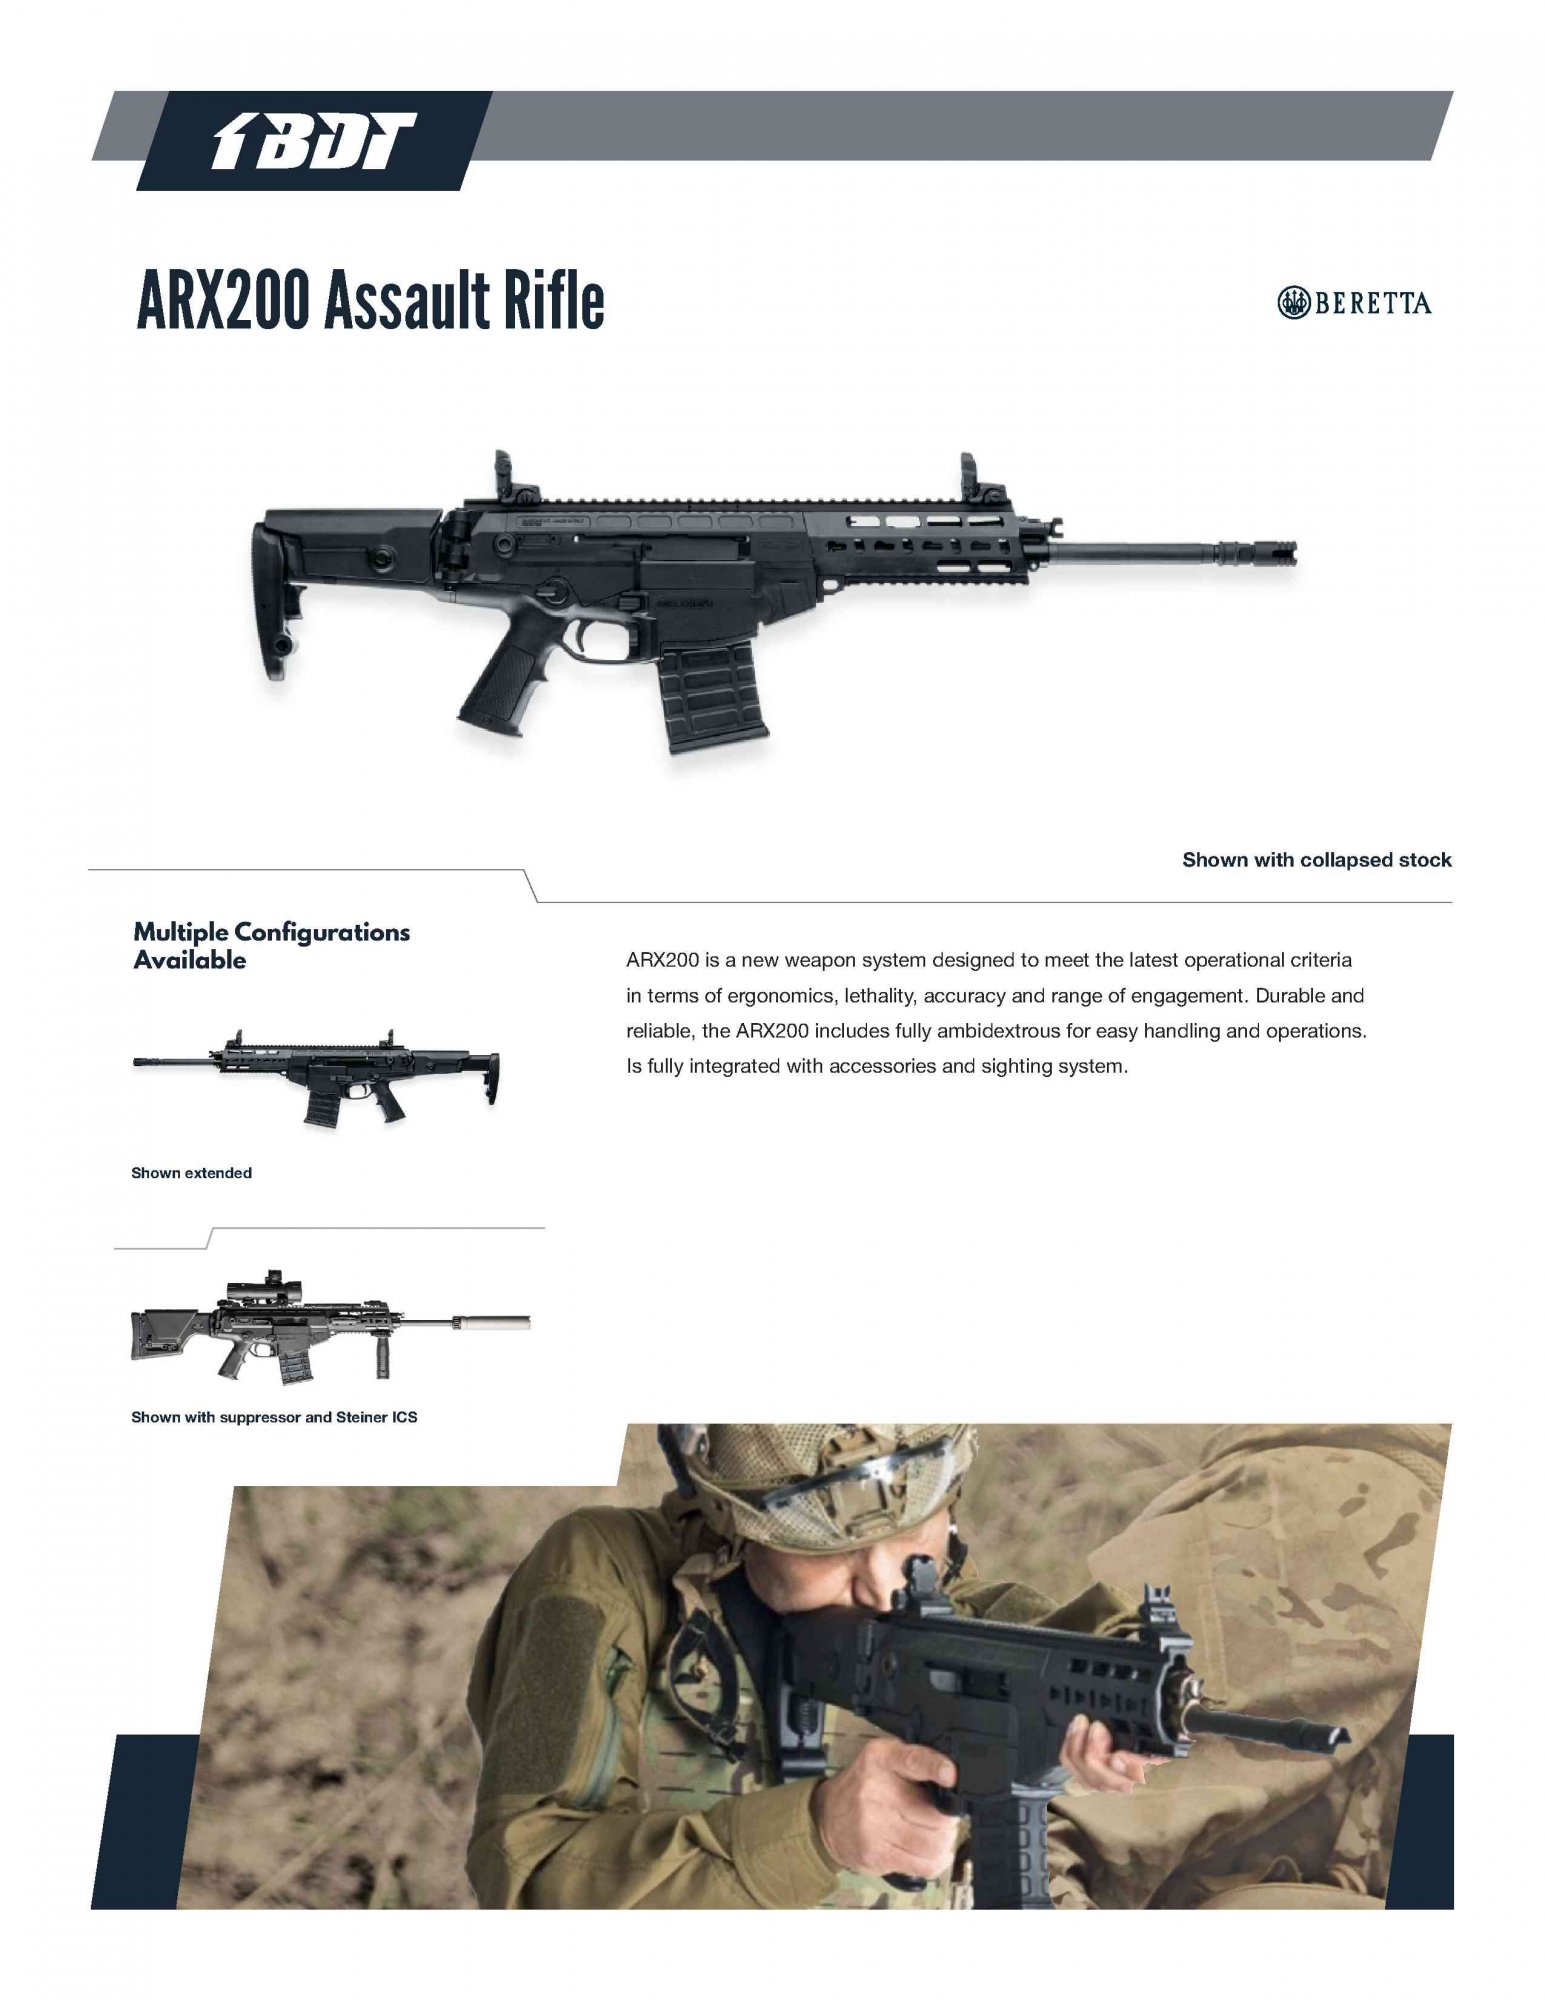 beretta-arx200-assault-rifle1.jpg